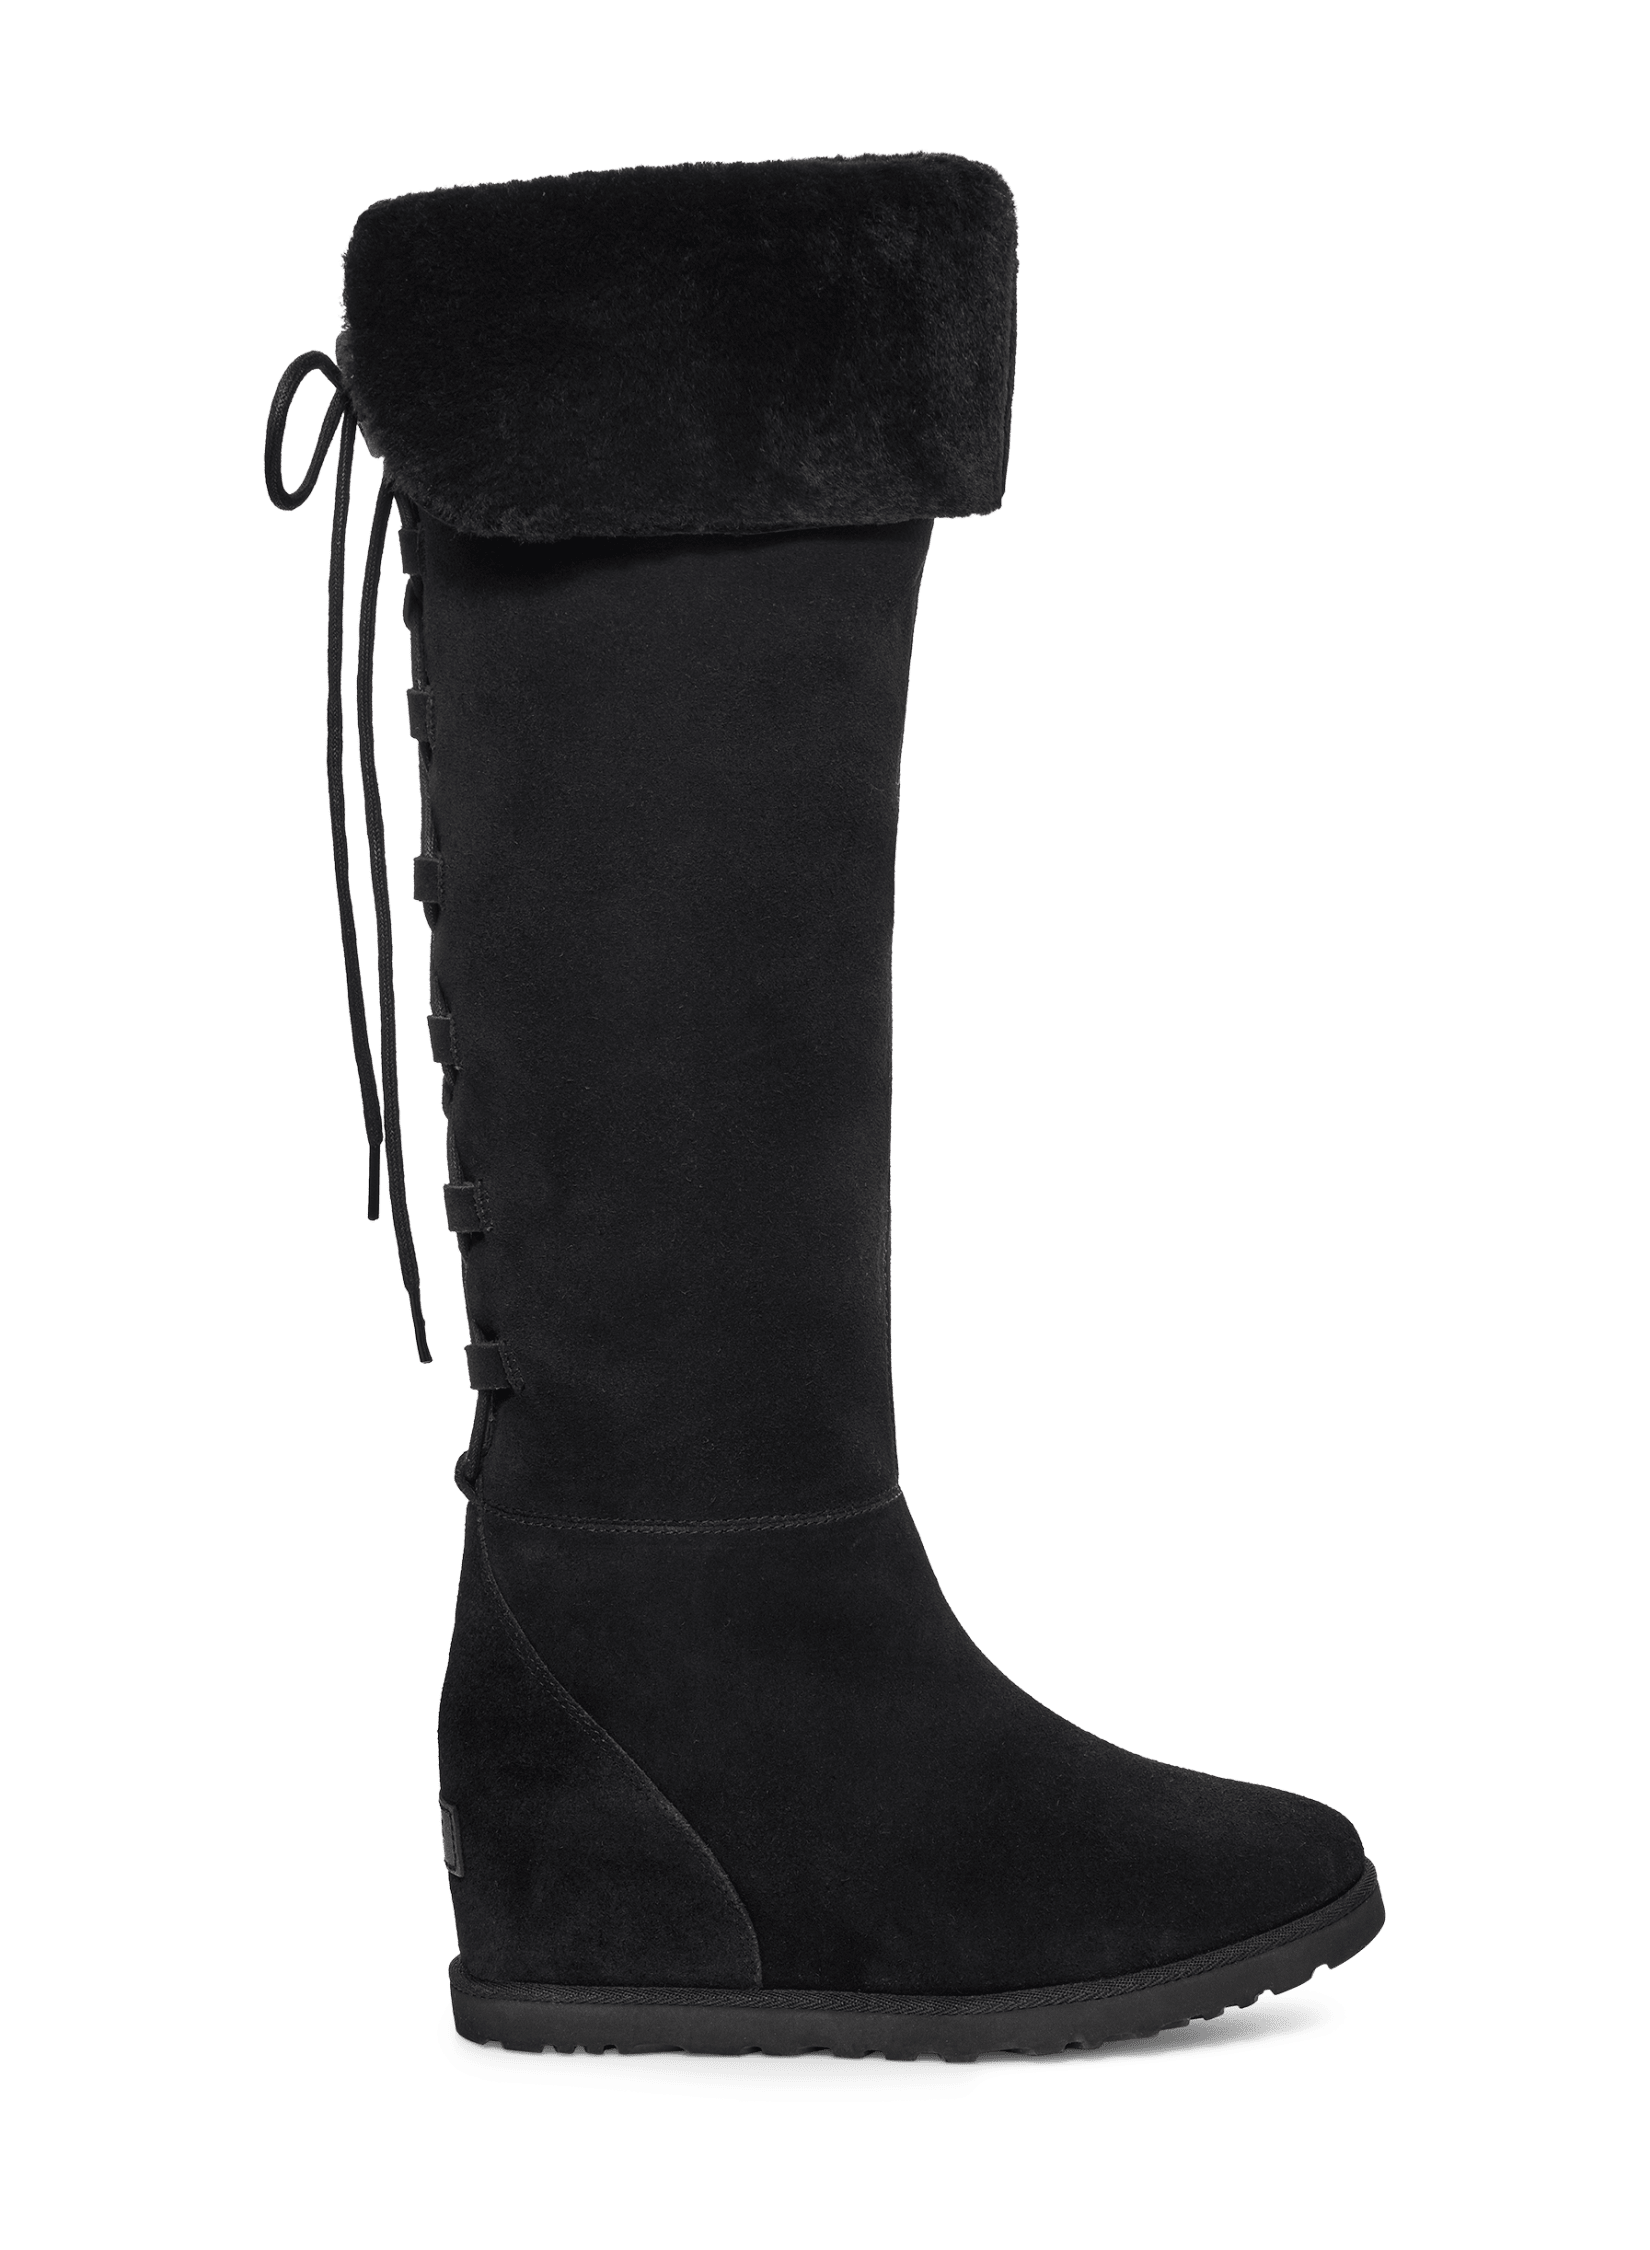 Classic Femme OTK Lace Boot | UGG®